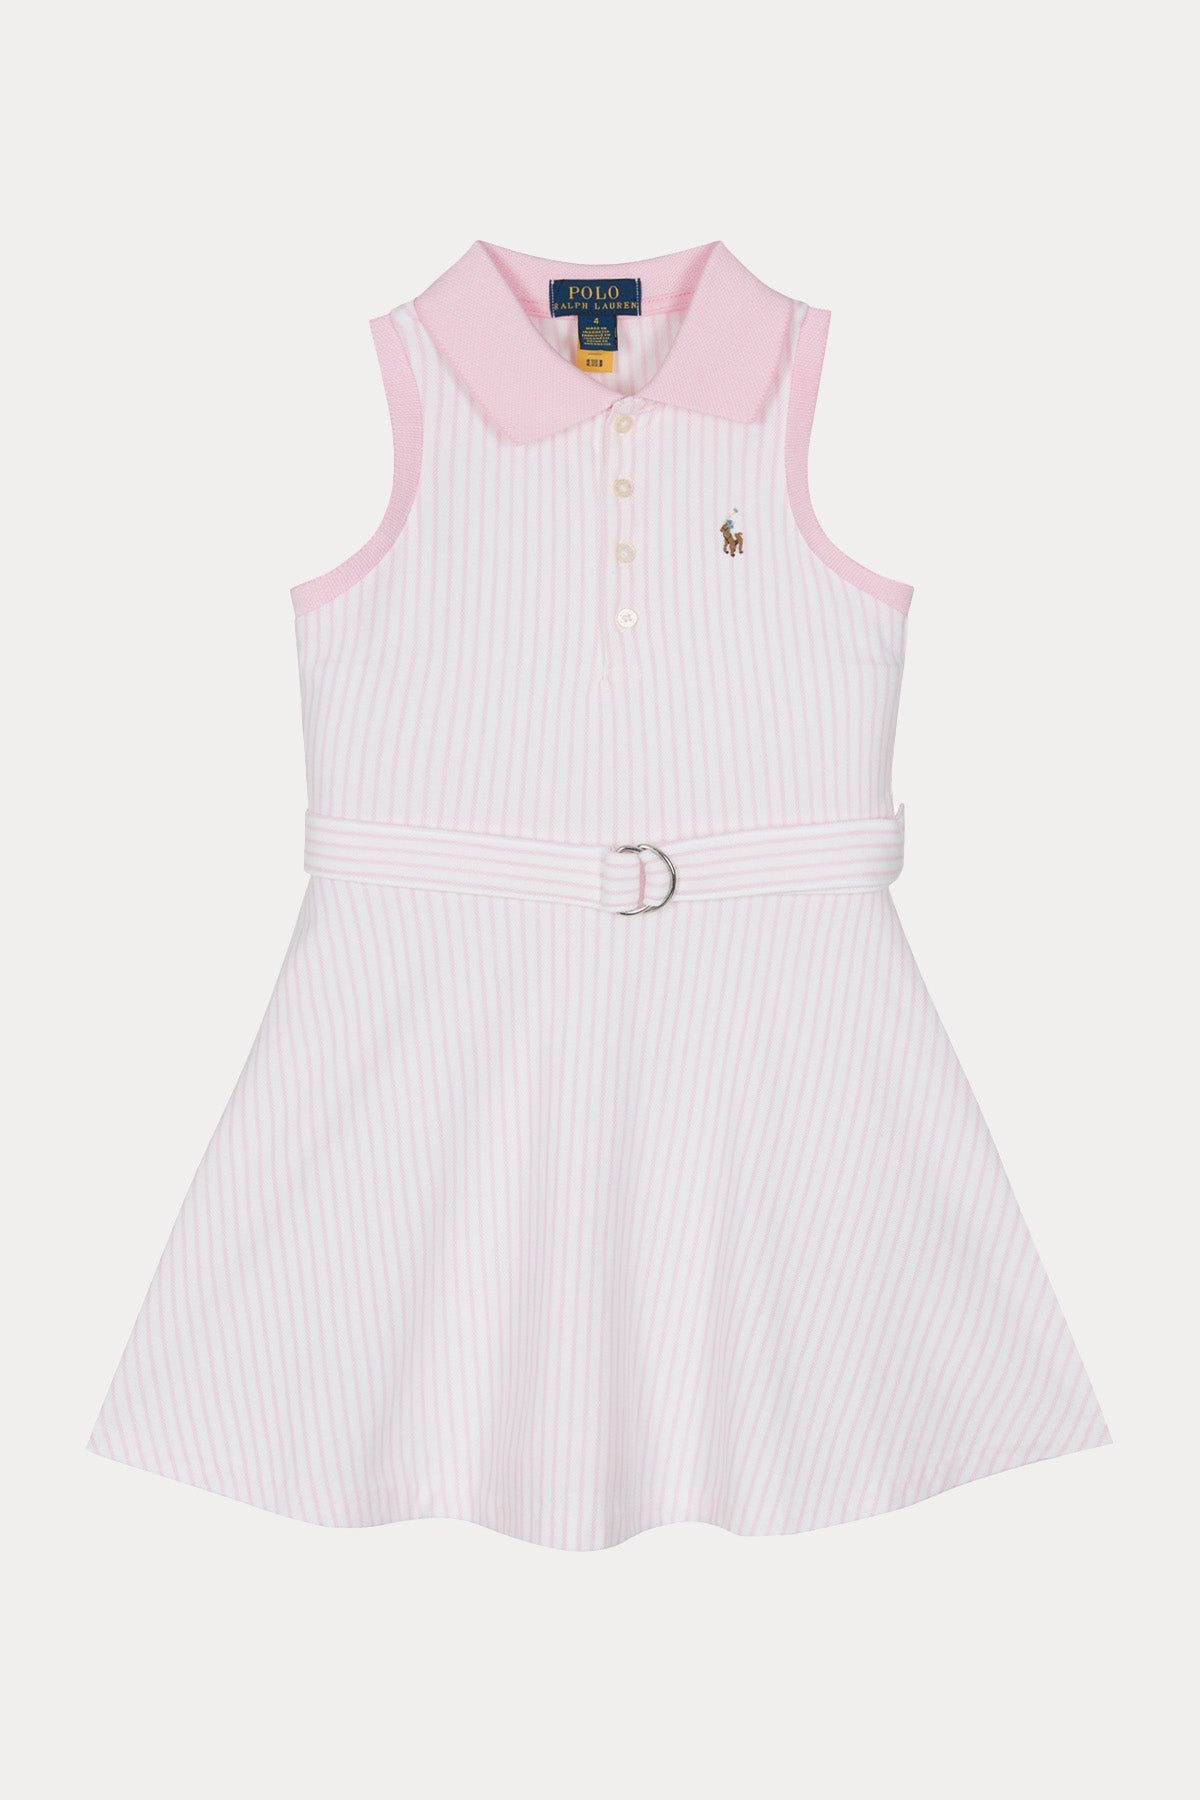 Polo Ralph Lauren Kids 2-4 Yaş Kız Çocuk Kemerli Çizgili Elbise